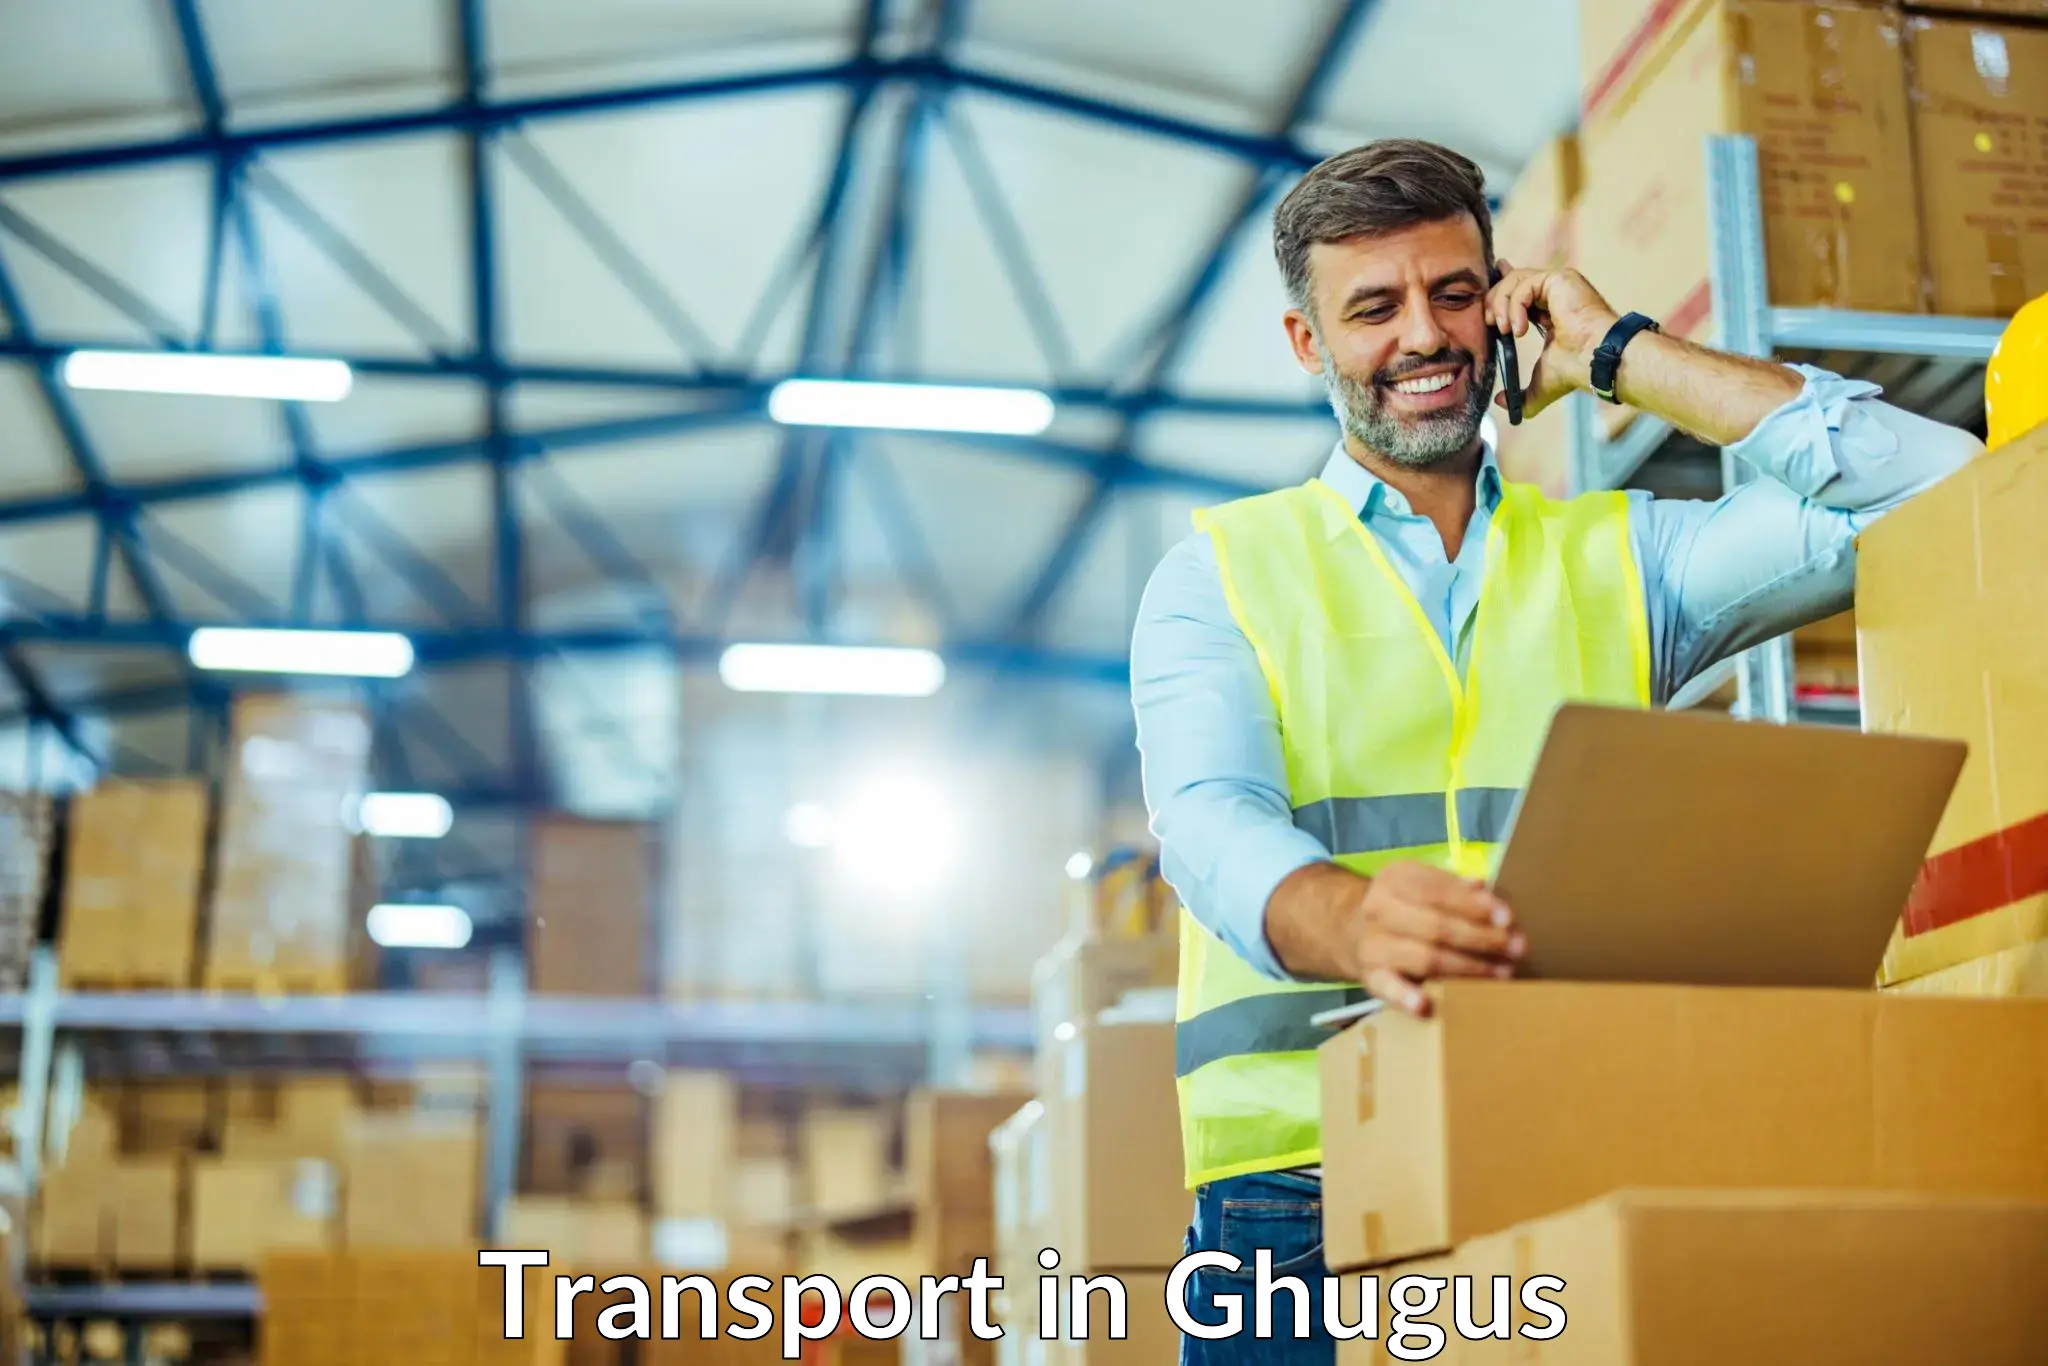 Furniture transport service in Ghugus